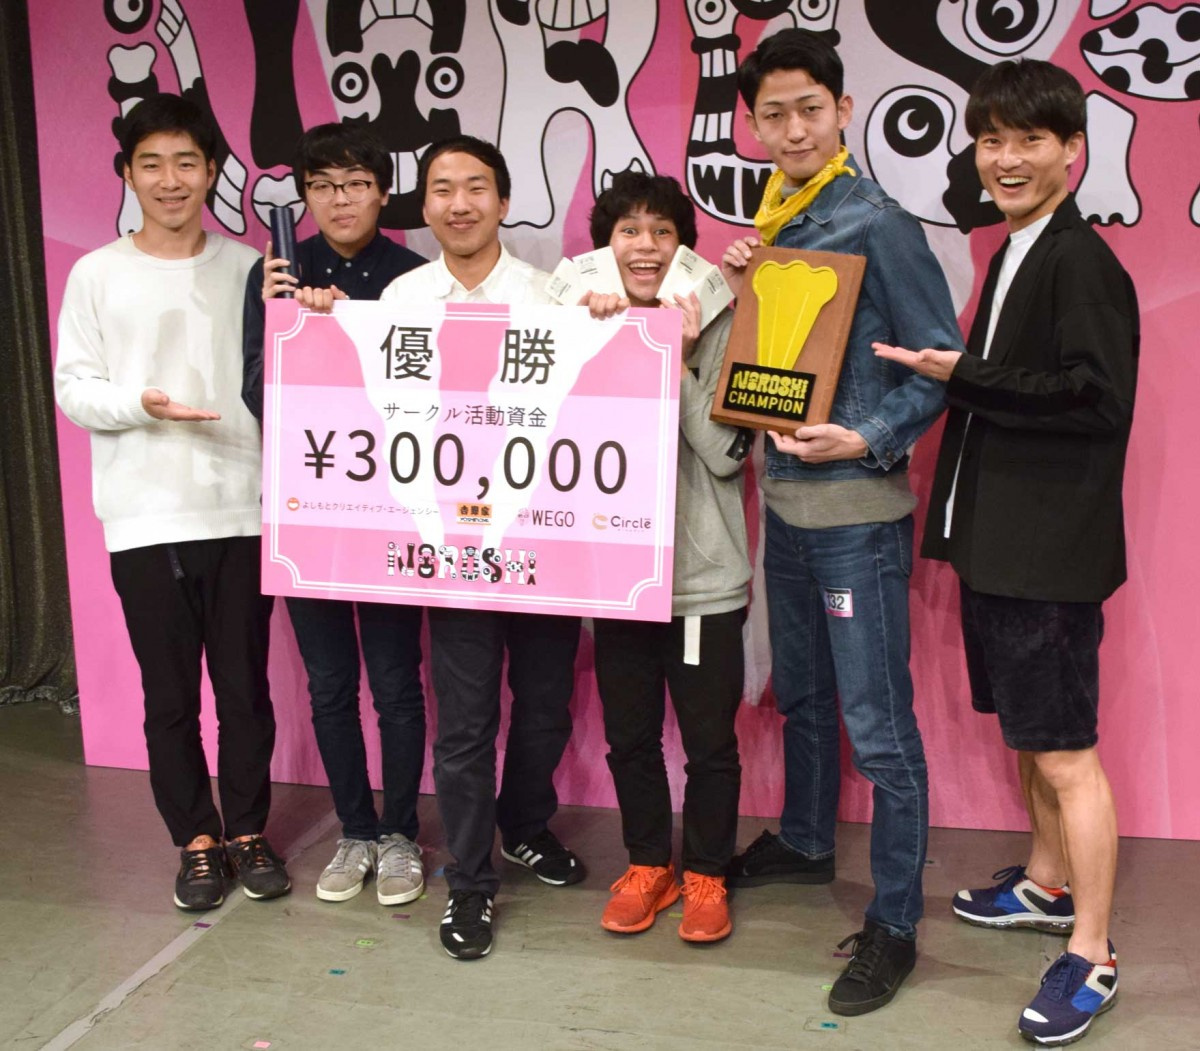 全国お笑いサークル団体戦 Noroshi19 優勝は日本大学の ガニ股ガニ Oricon News